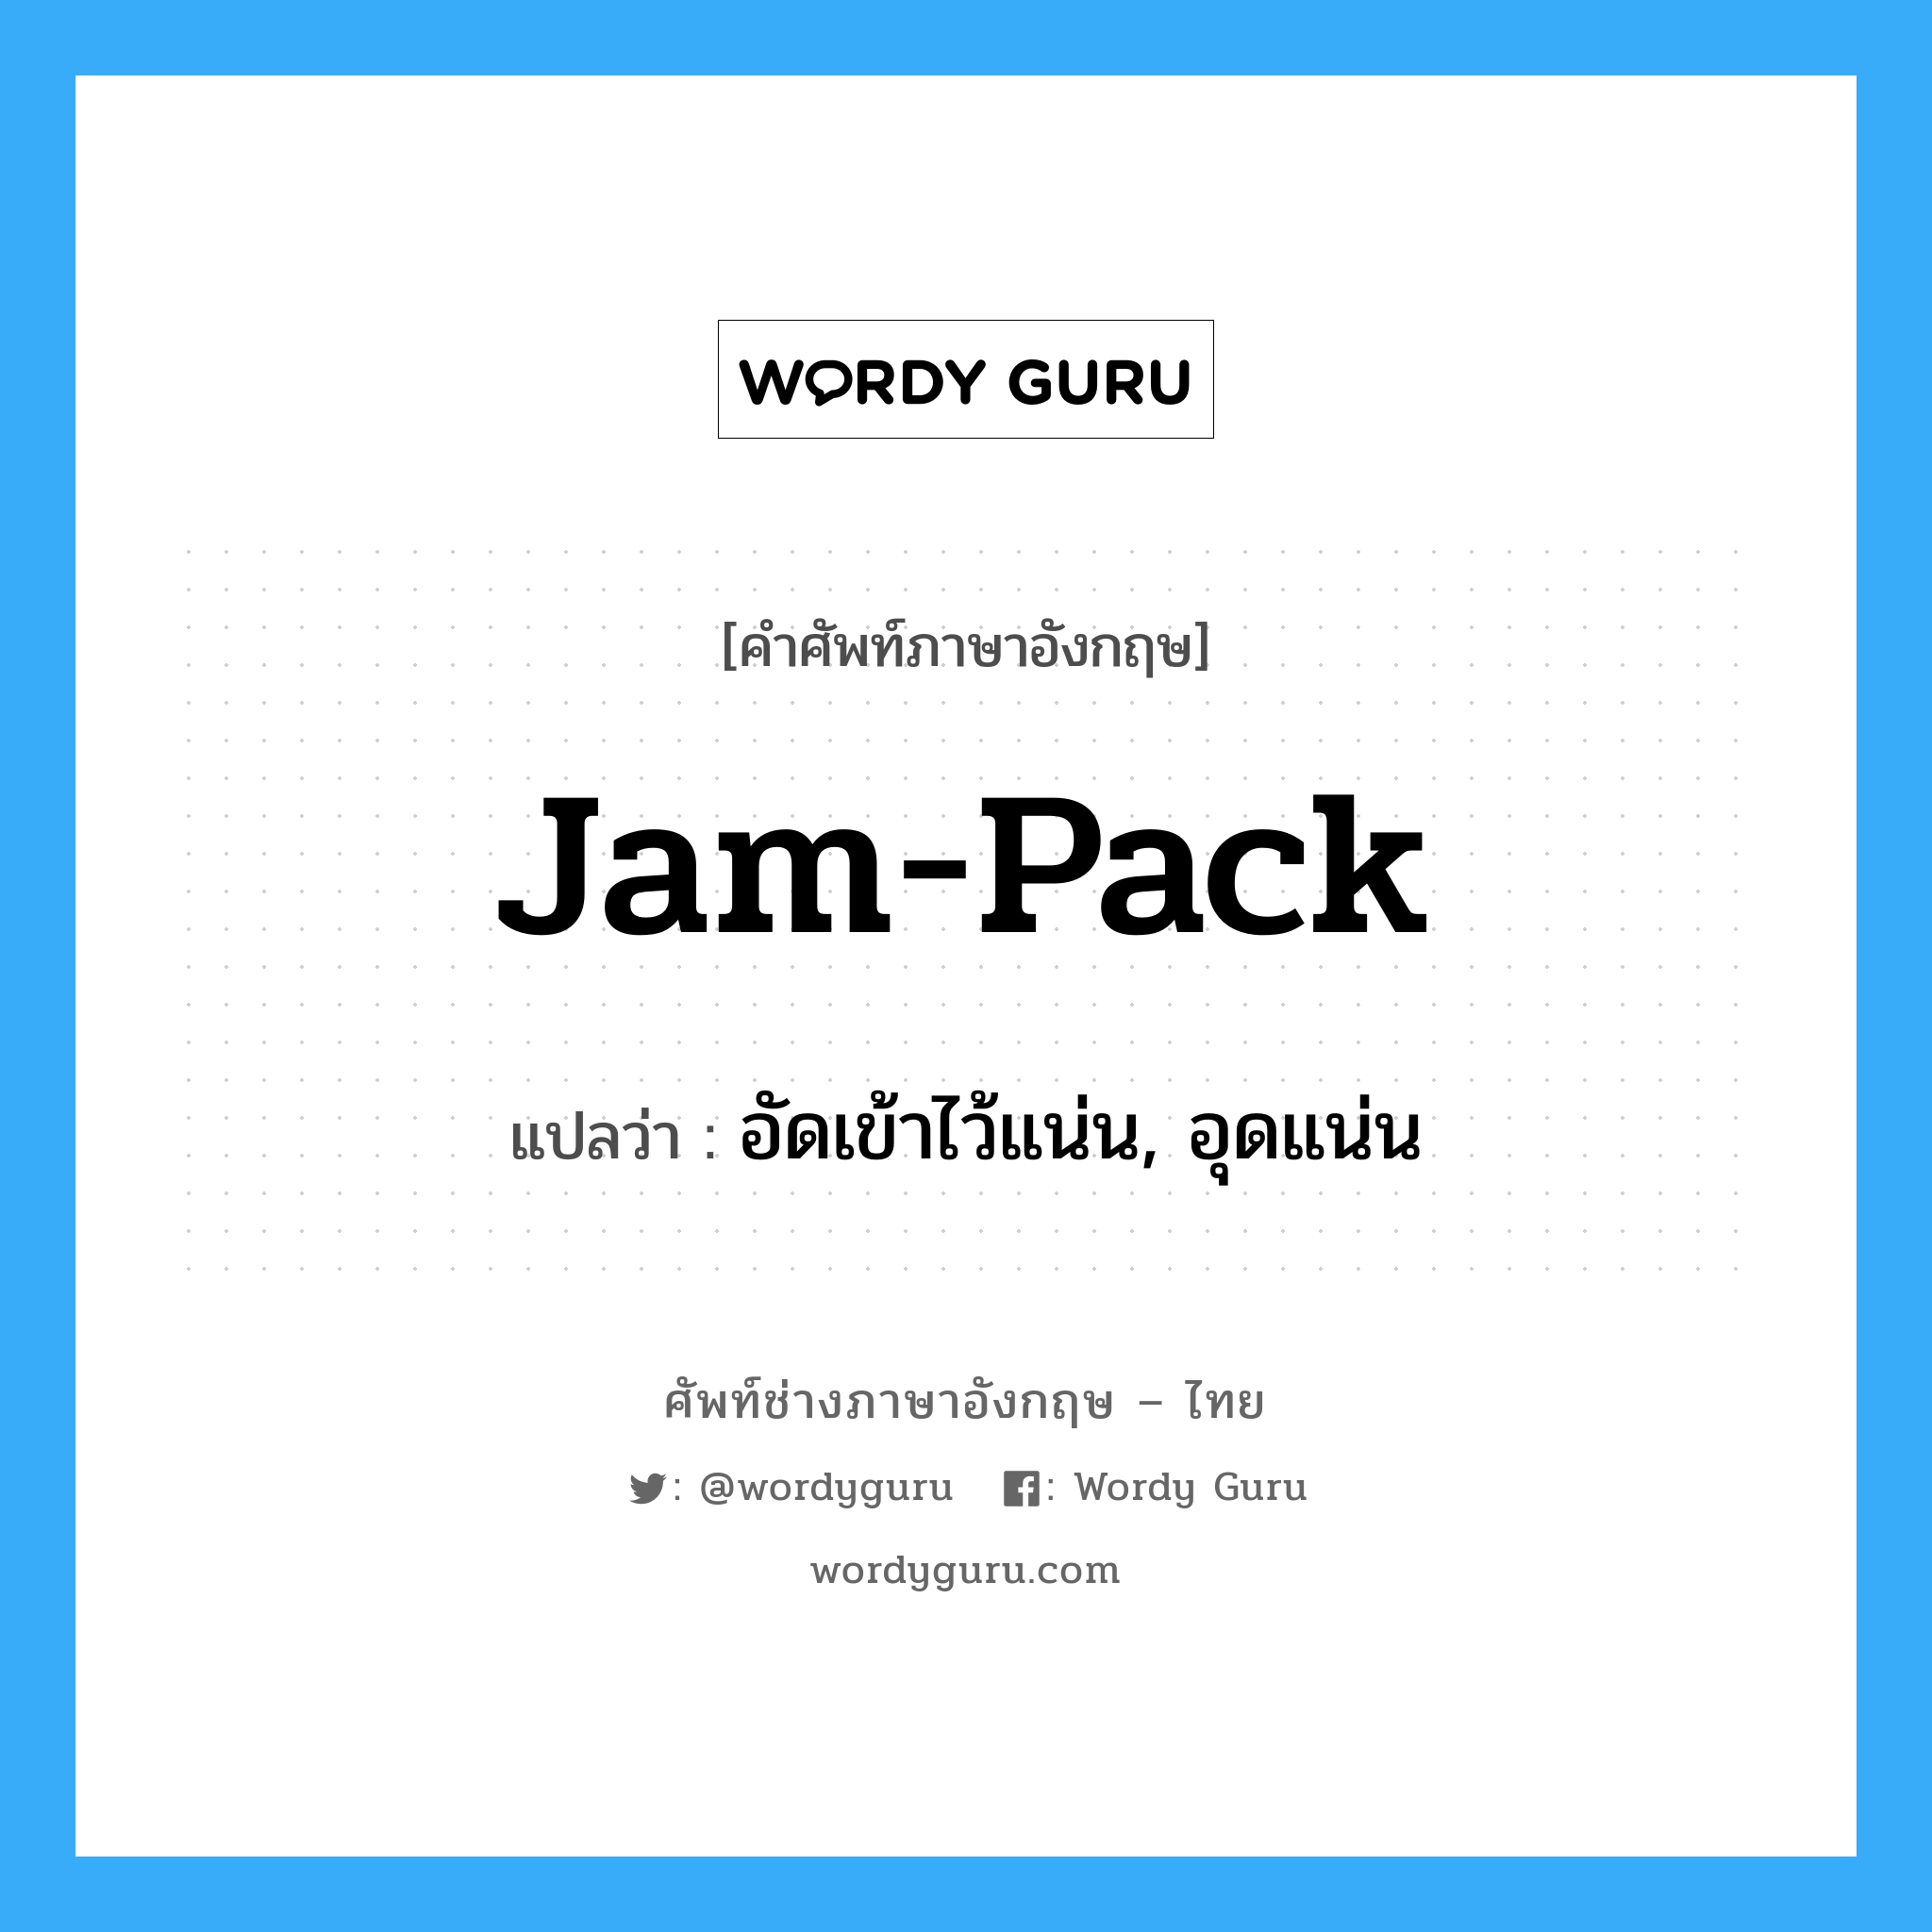 jam-pack แปลว่า?, คำศัพท์ช่างภาษาอังกฤษ - ไทย jam-pack คำศัพท์ภาษาอังกฤษ jam-pack แปลว่า อัดเข้าไว้แน่น, อุดแน่น